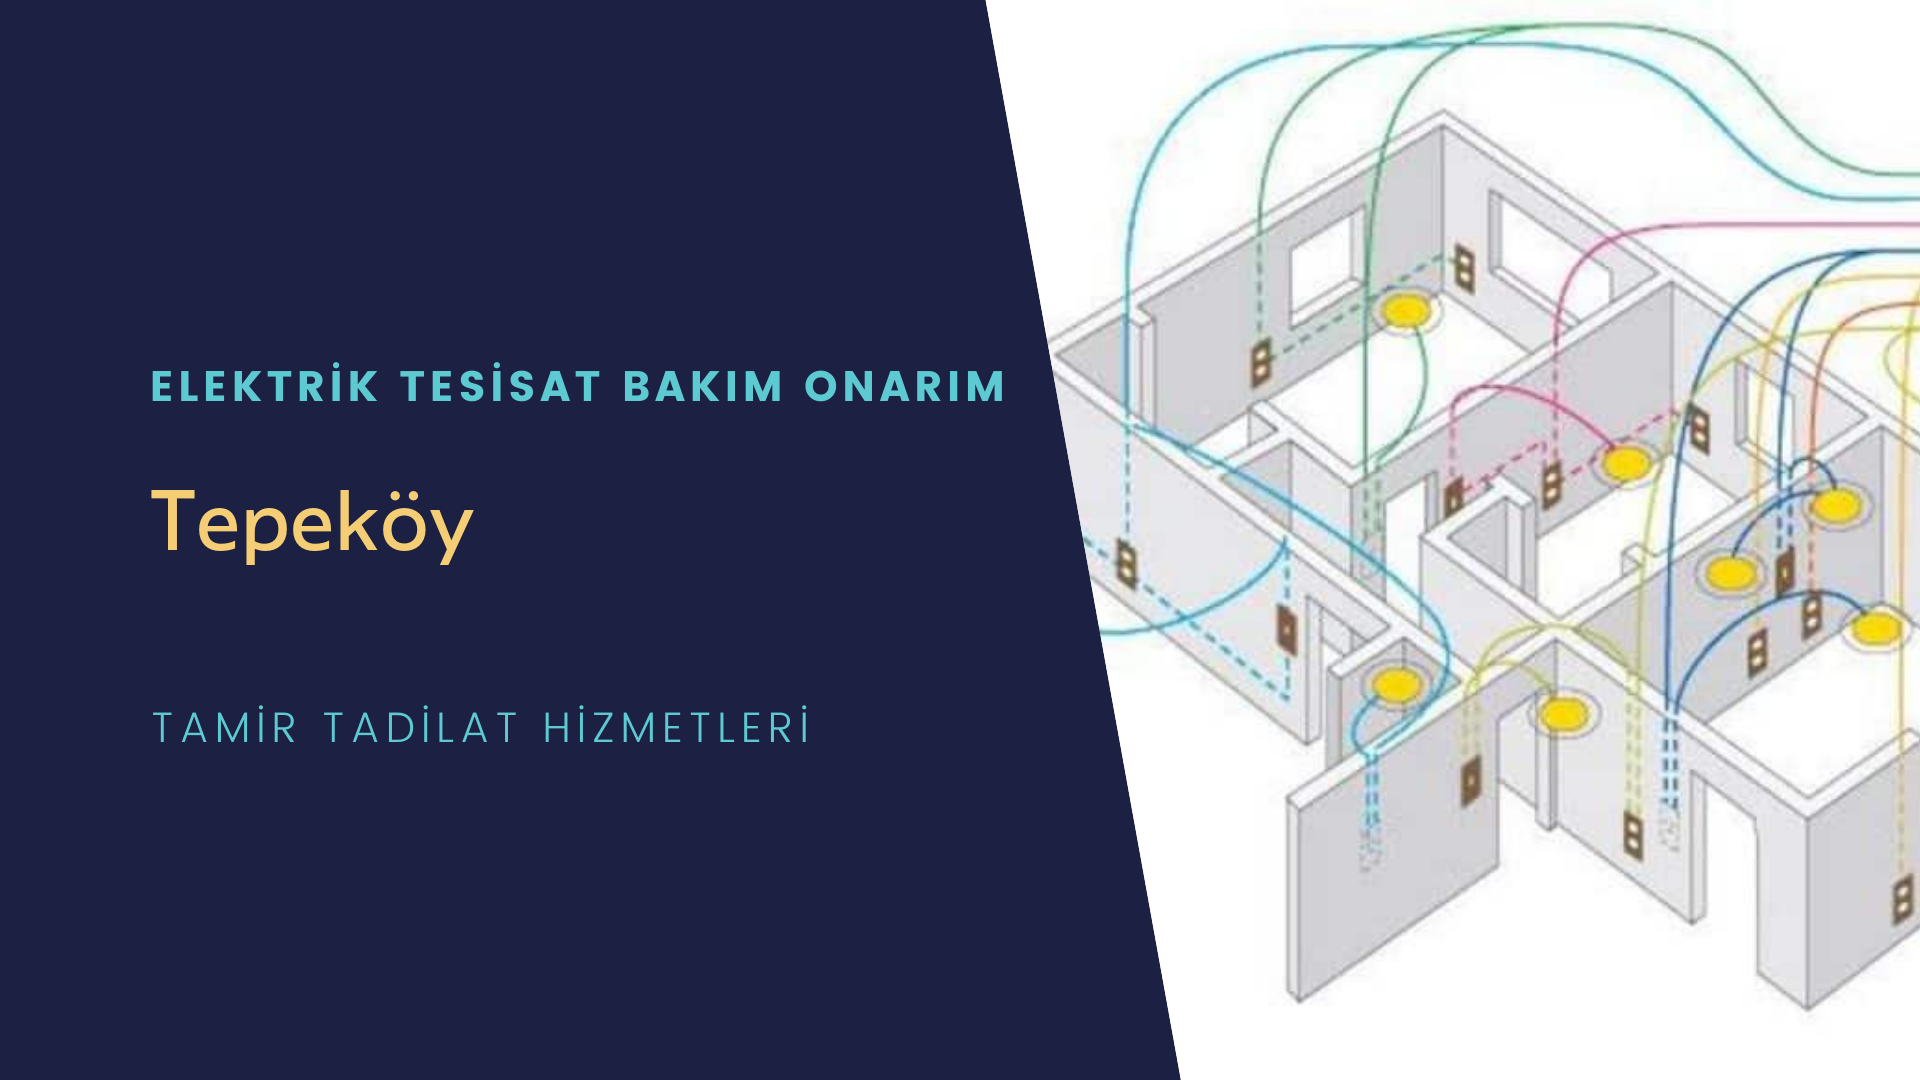 Tepeköy'de elektrik tesisatı ustalarımı arıyorsunuz doğru adrestenizi Tepeköy elektrik tesisatı ustalarımız 7/24 sizlere hizmet vermekten mutluluk duyar.